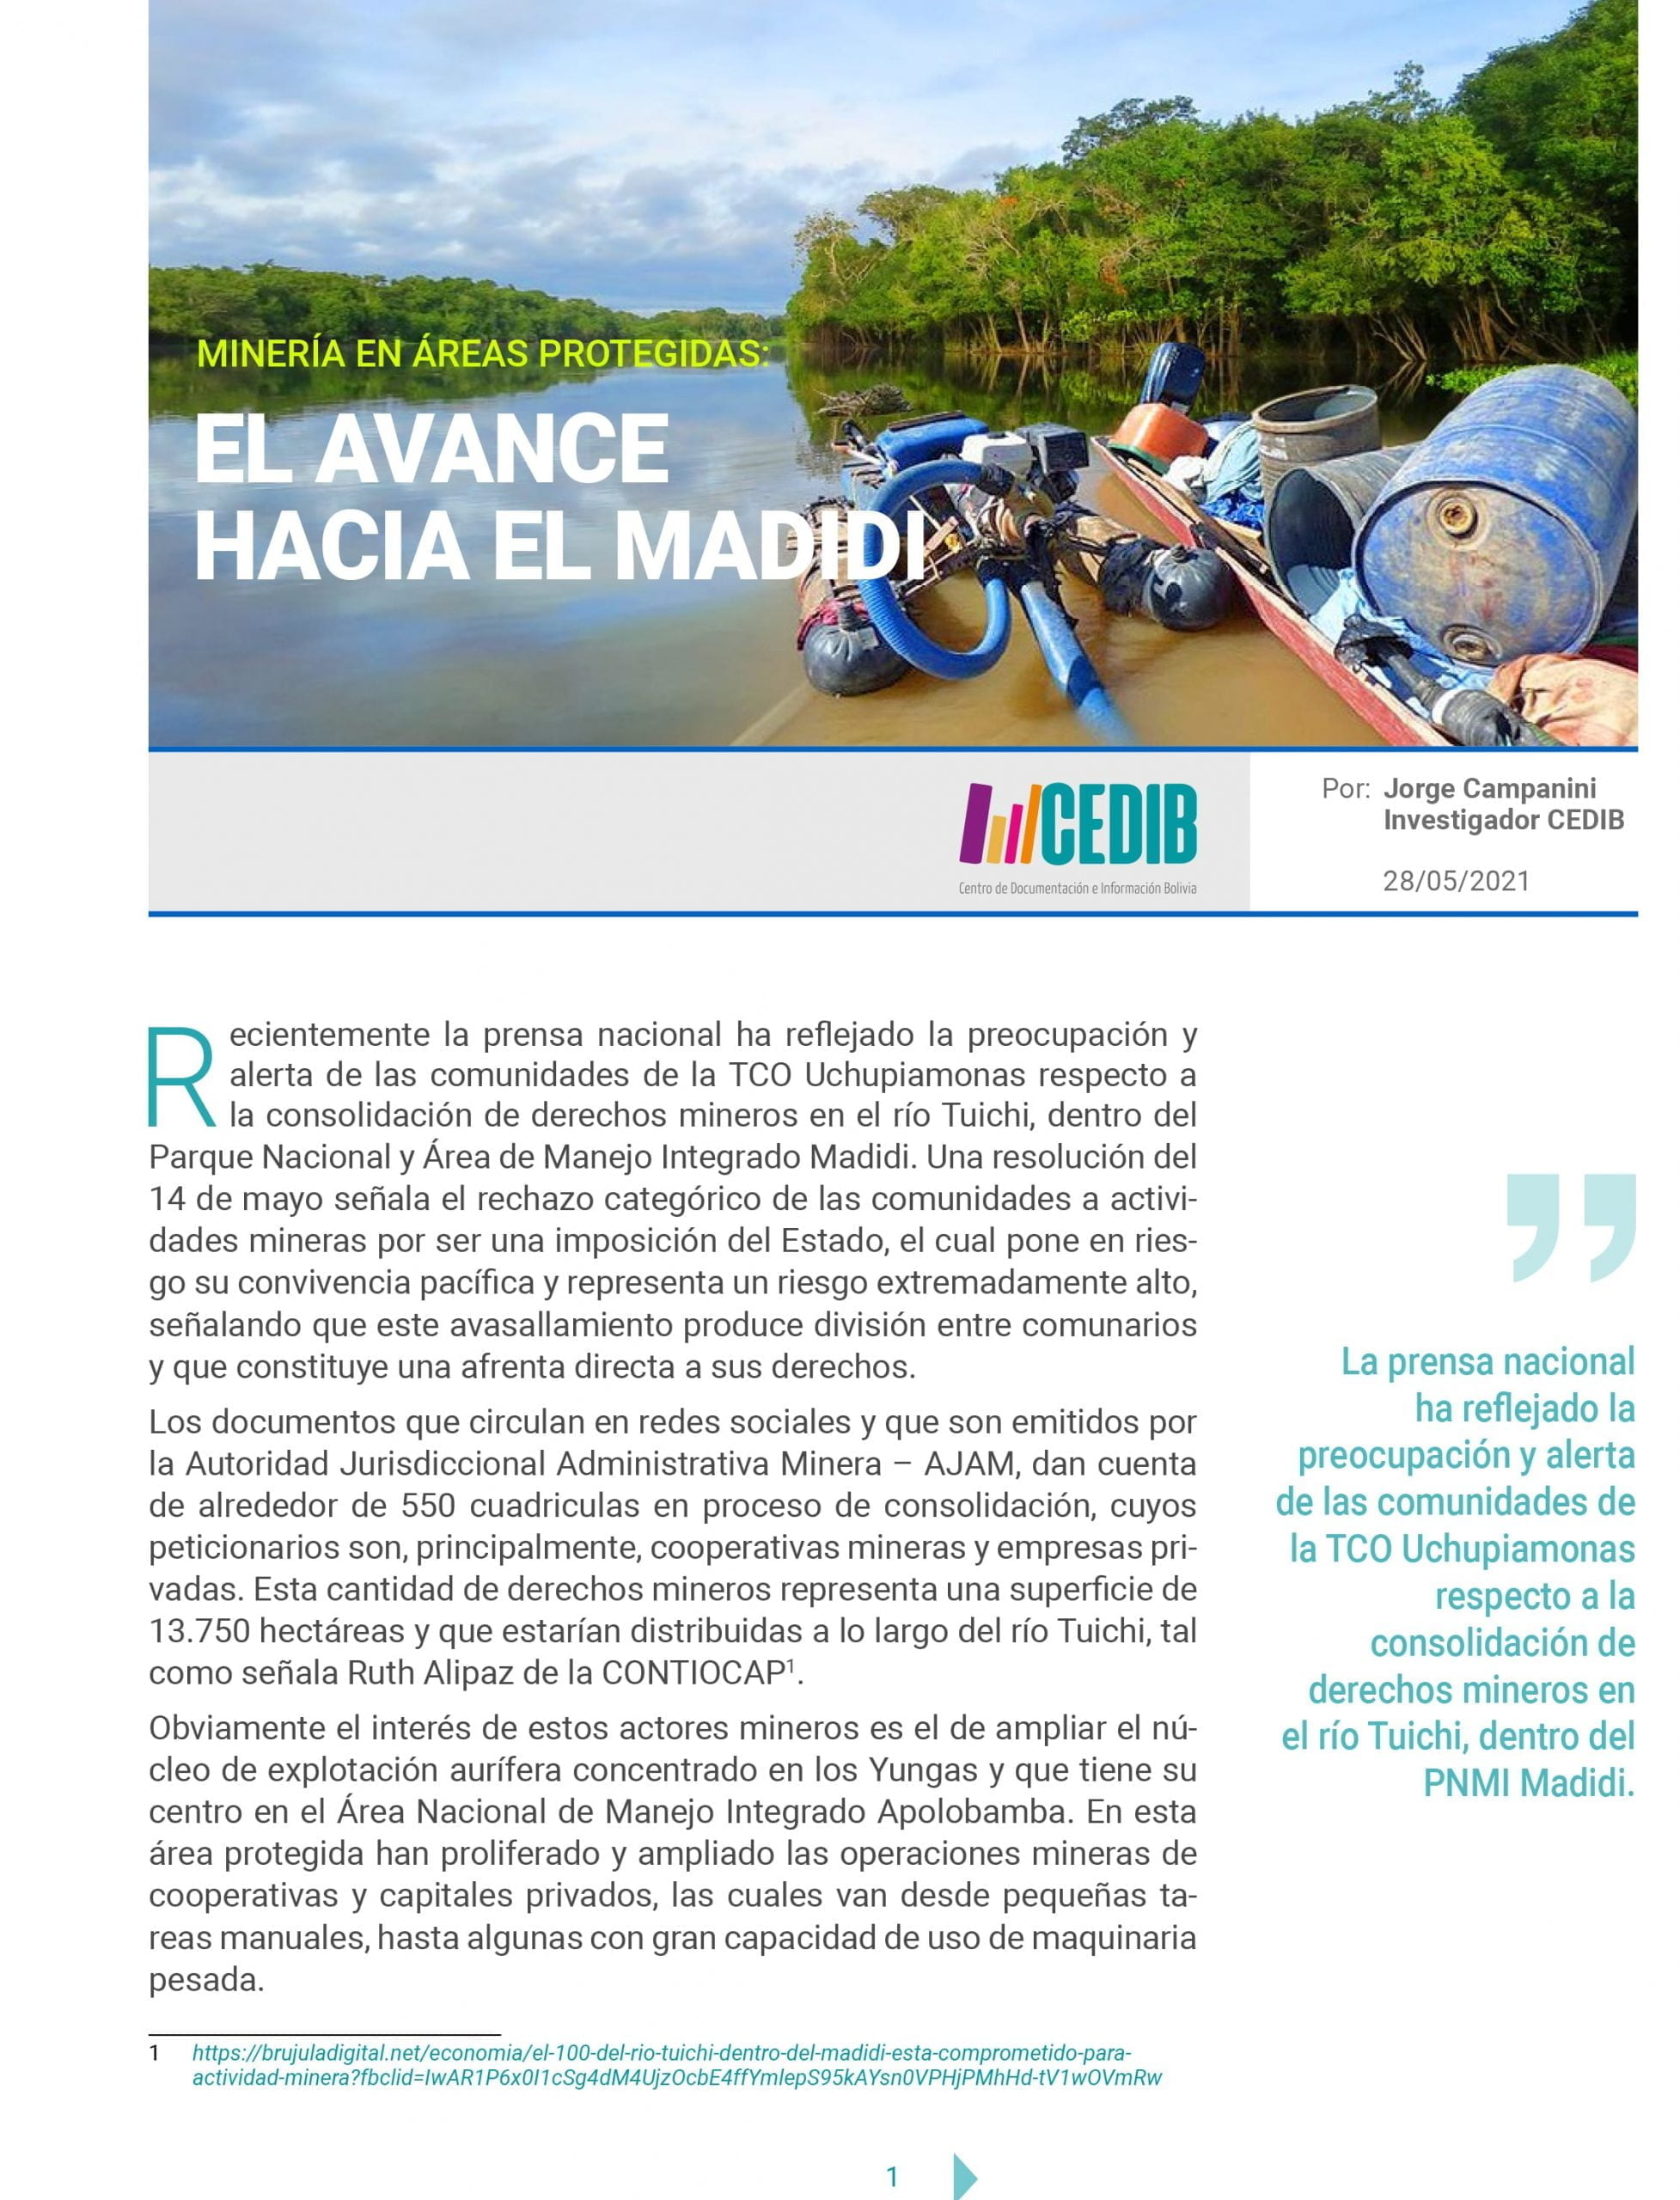 Actividad hidrocarburífera en Áreas Protegidas Bolivia: MADIDI (CEDIB 16.06.2015)